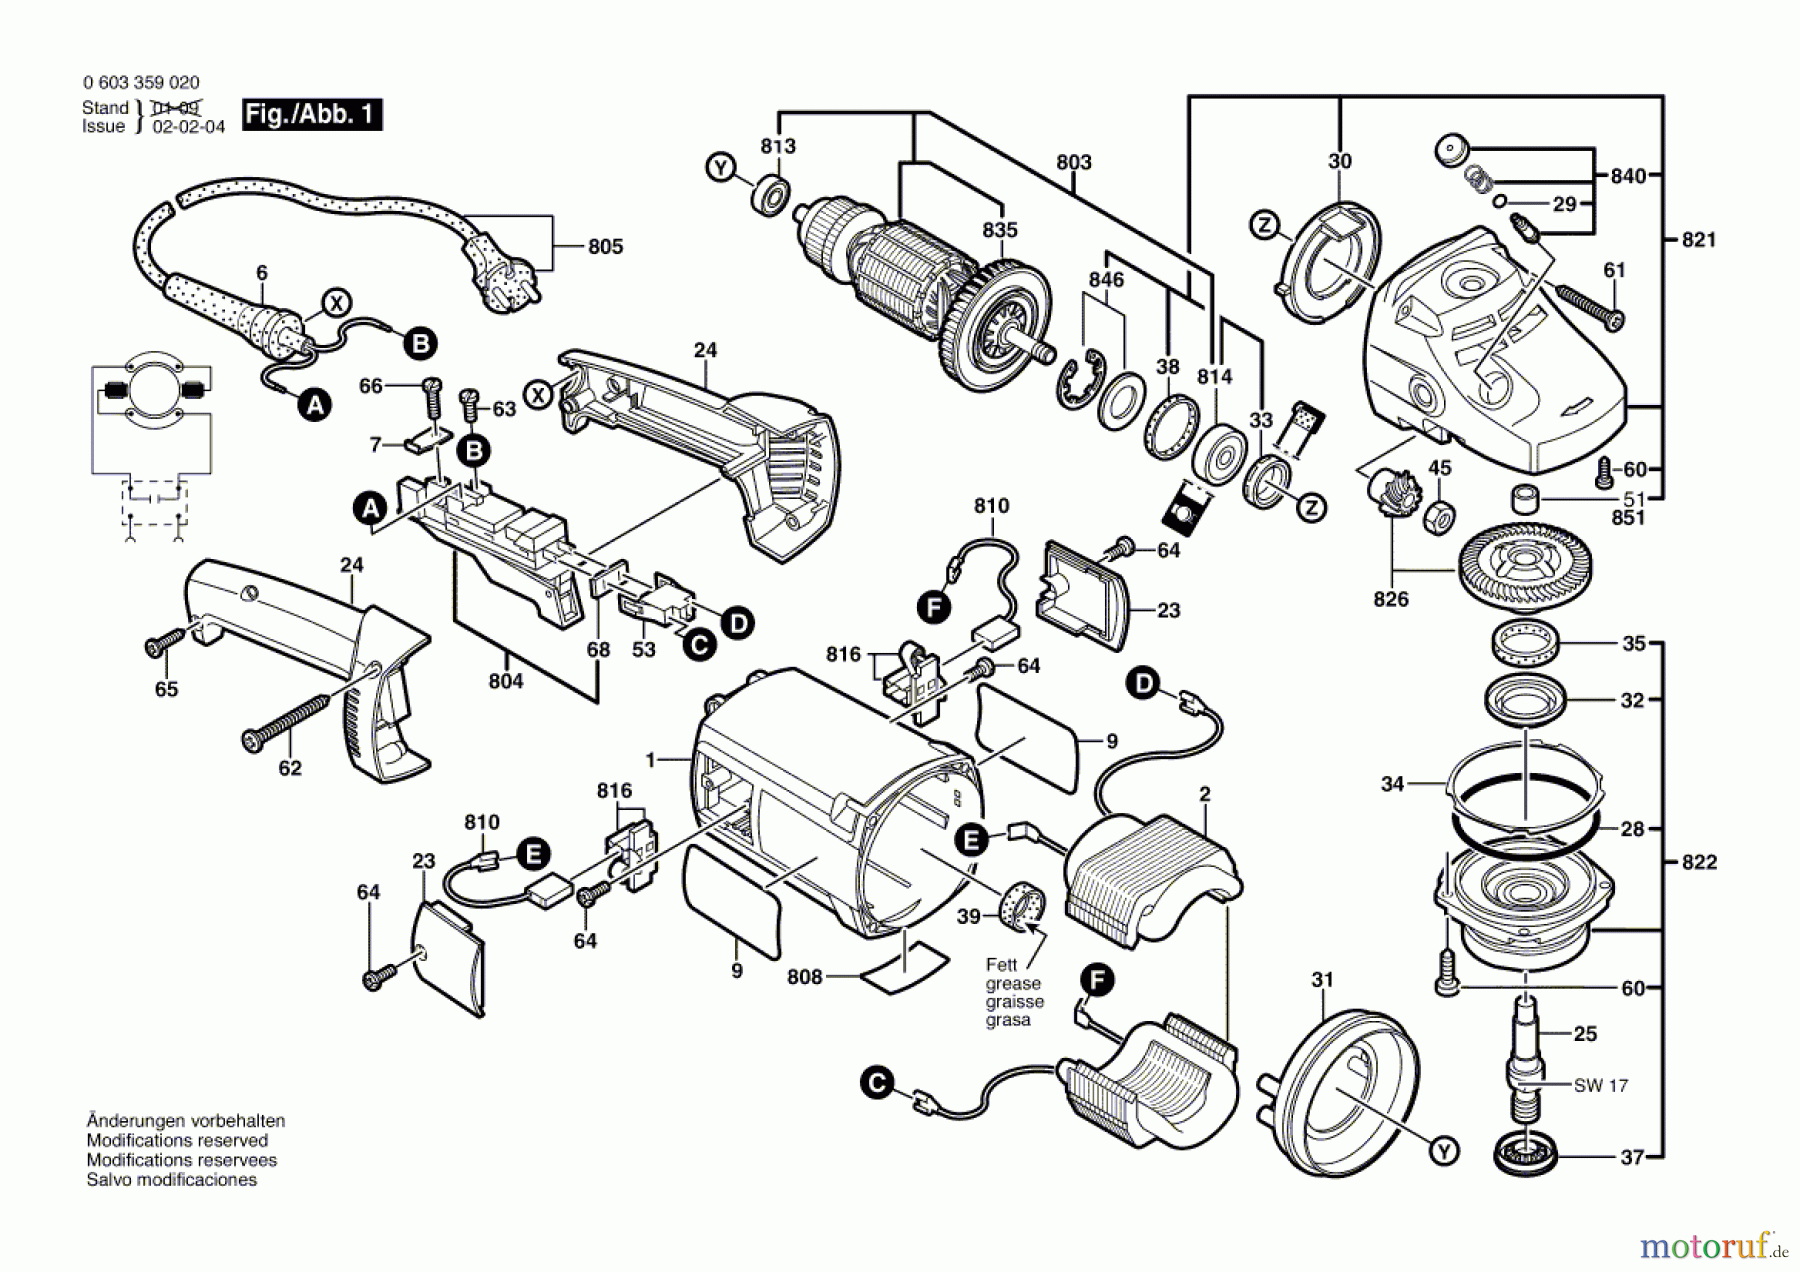  Bosch Werkzeug Winkelschleifer PWS 1900 Seite 1